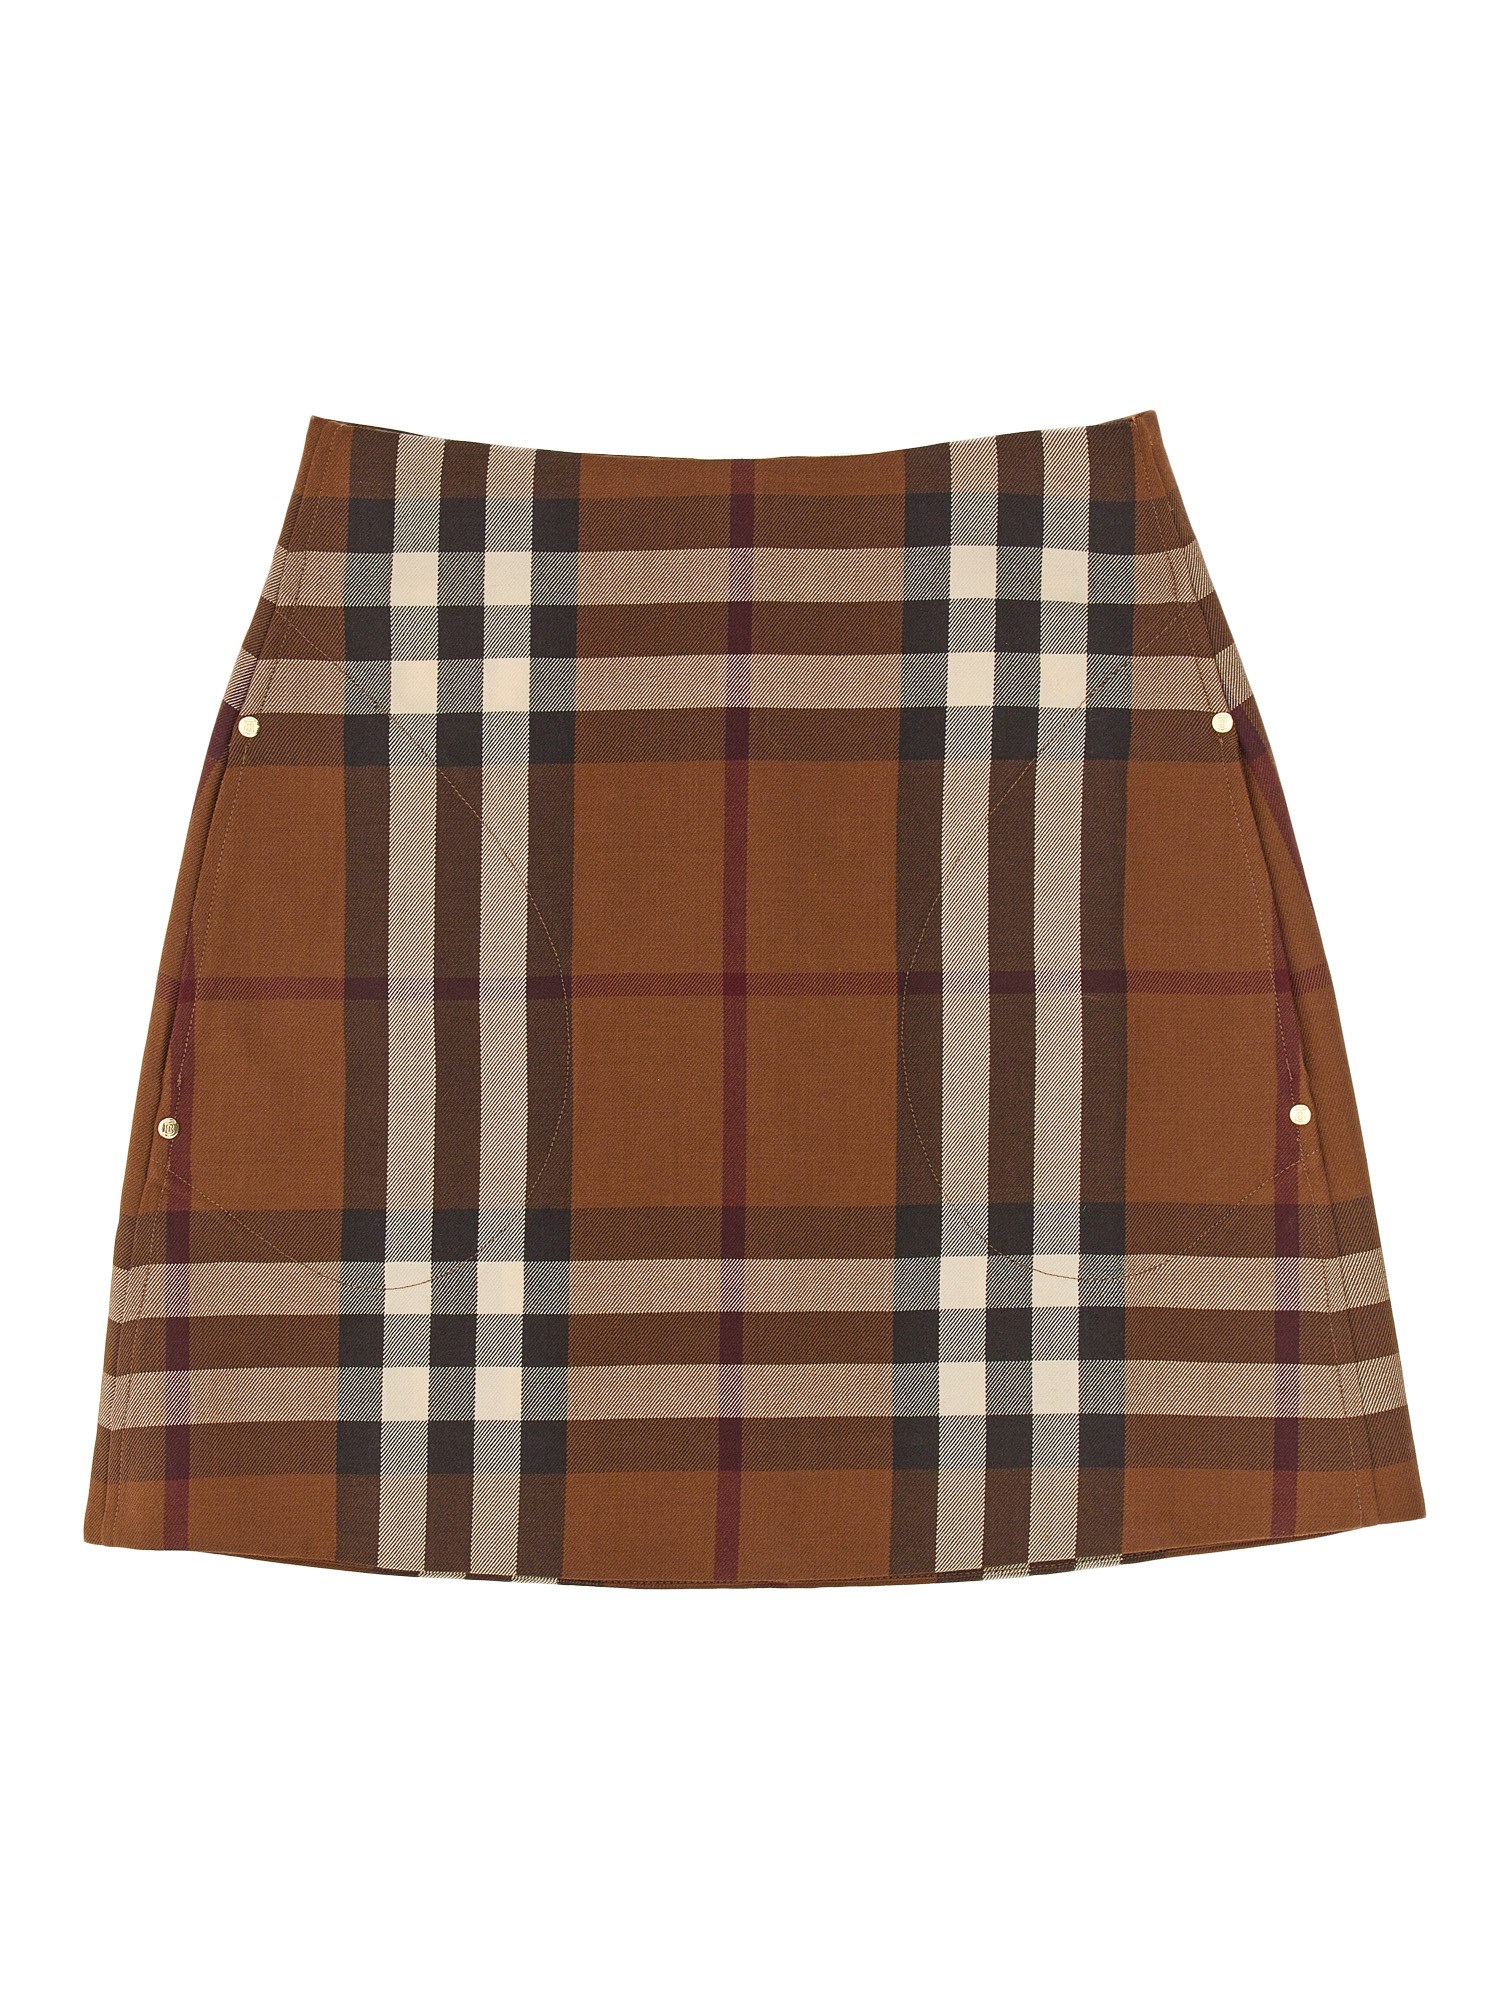 burberry mini skirt with tartan pattern